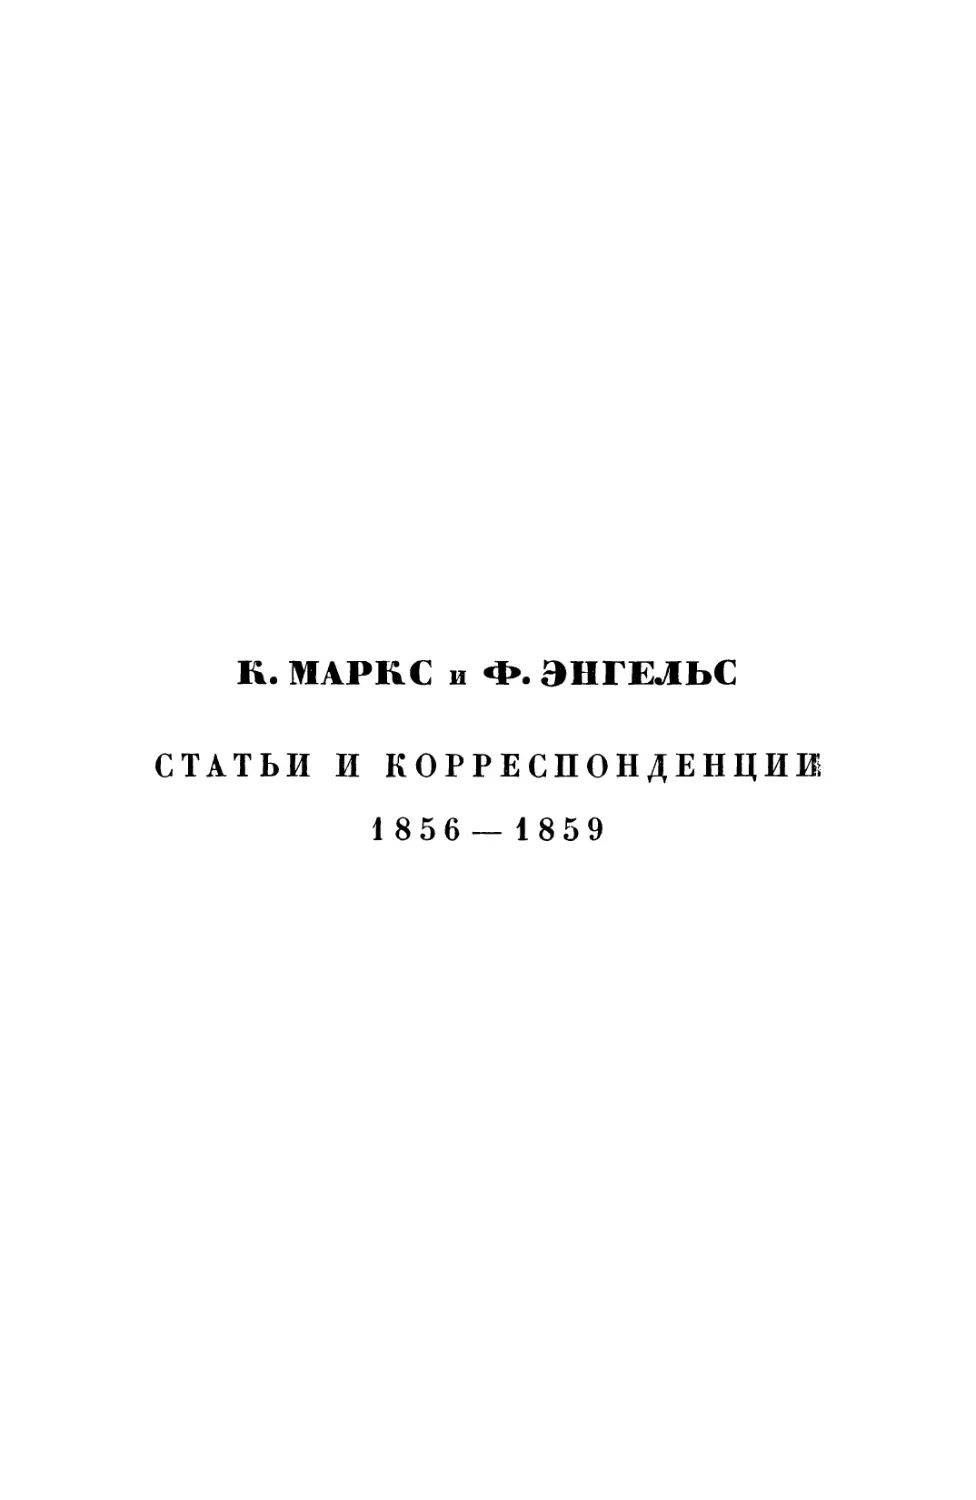 К. Маркс и Ф. Энгельс. Статьи и корреспонденции 1856—1869 гг.